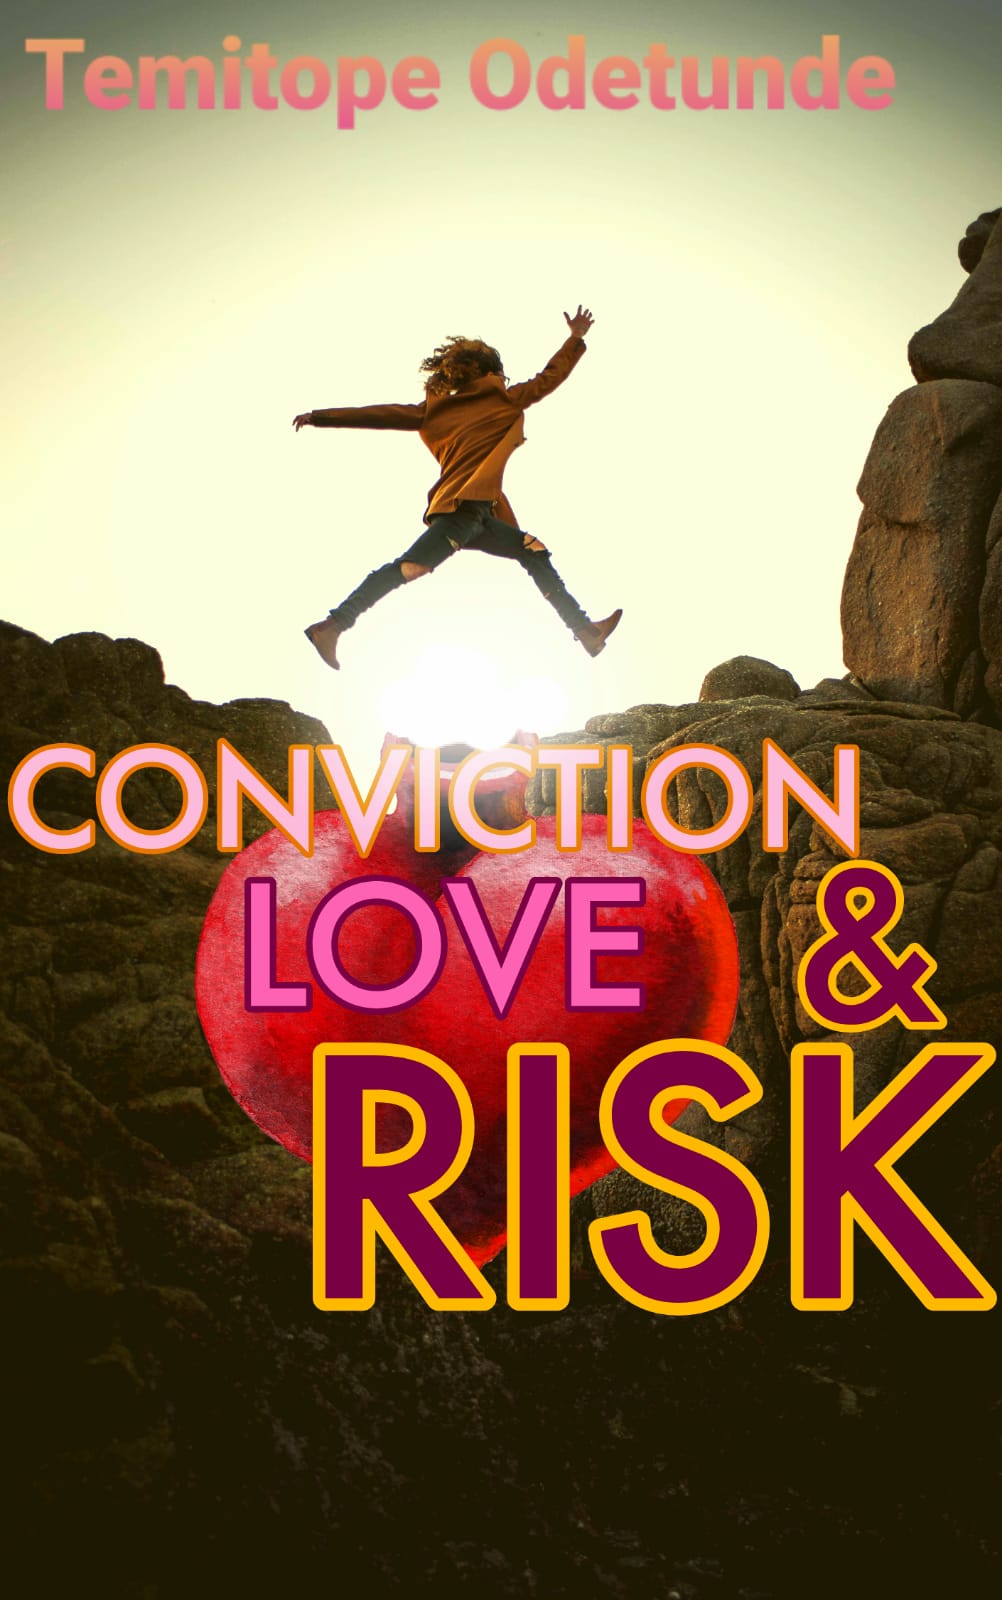 Love Conviction & Risk